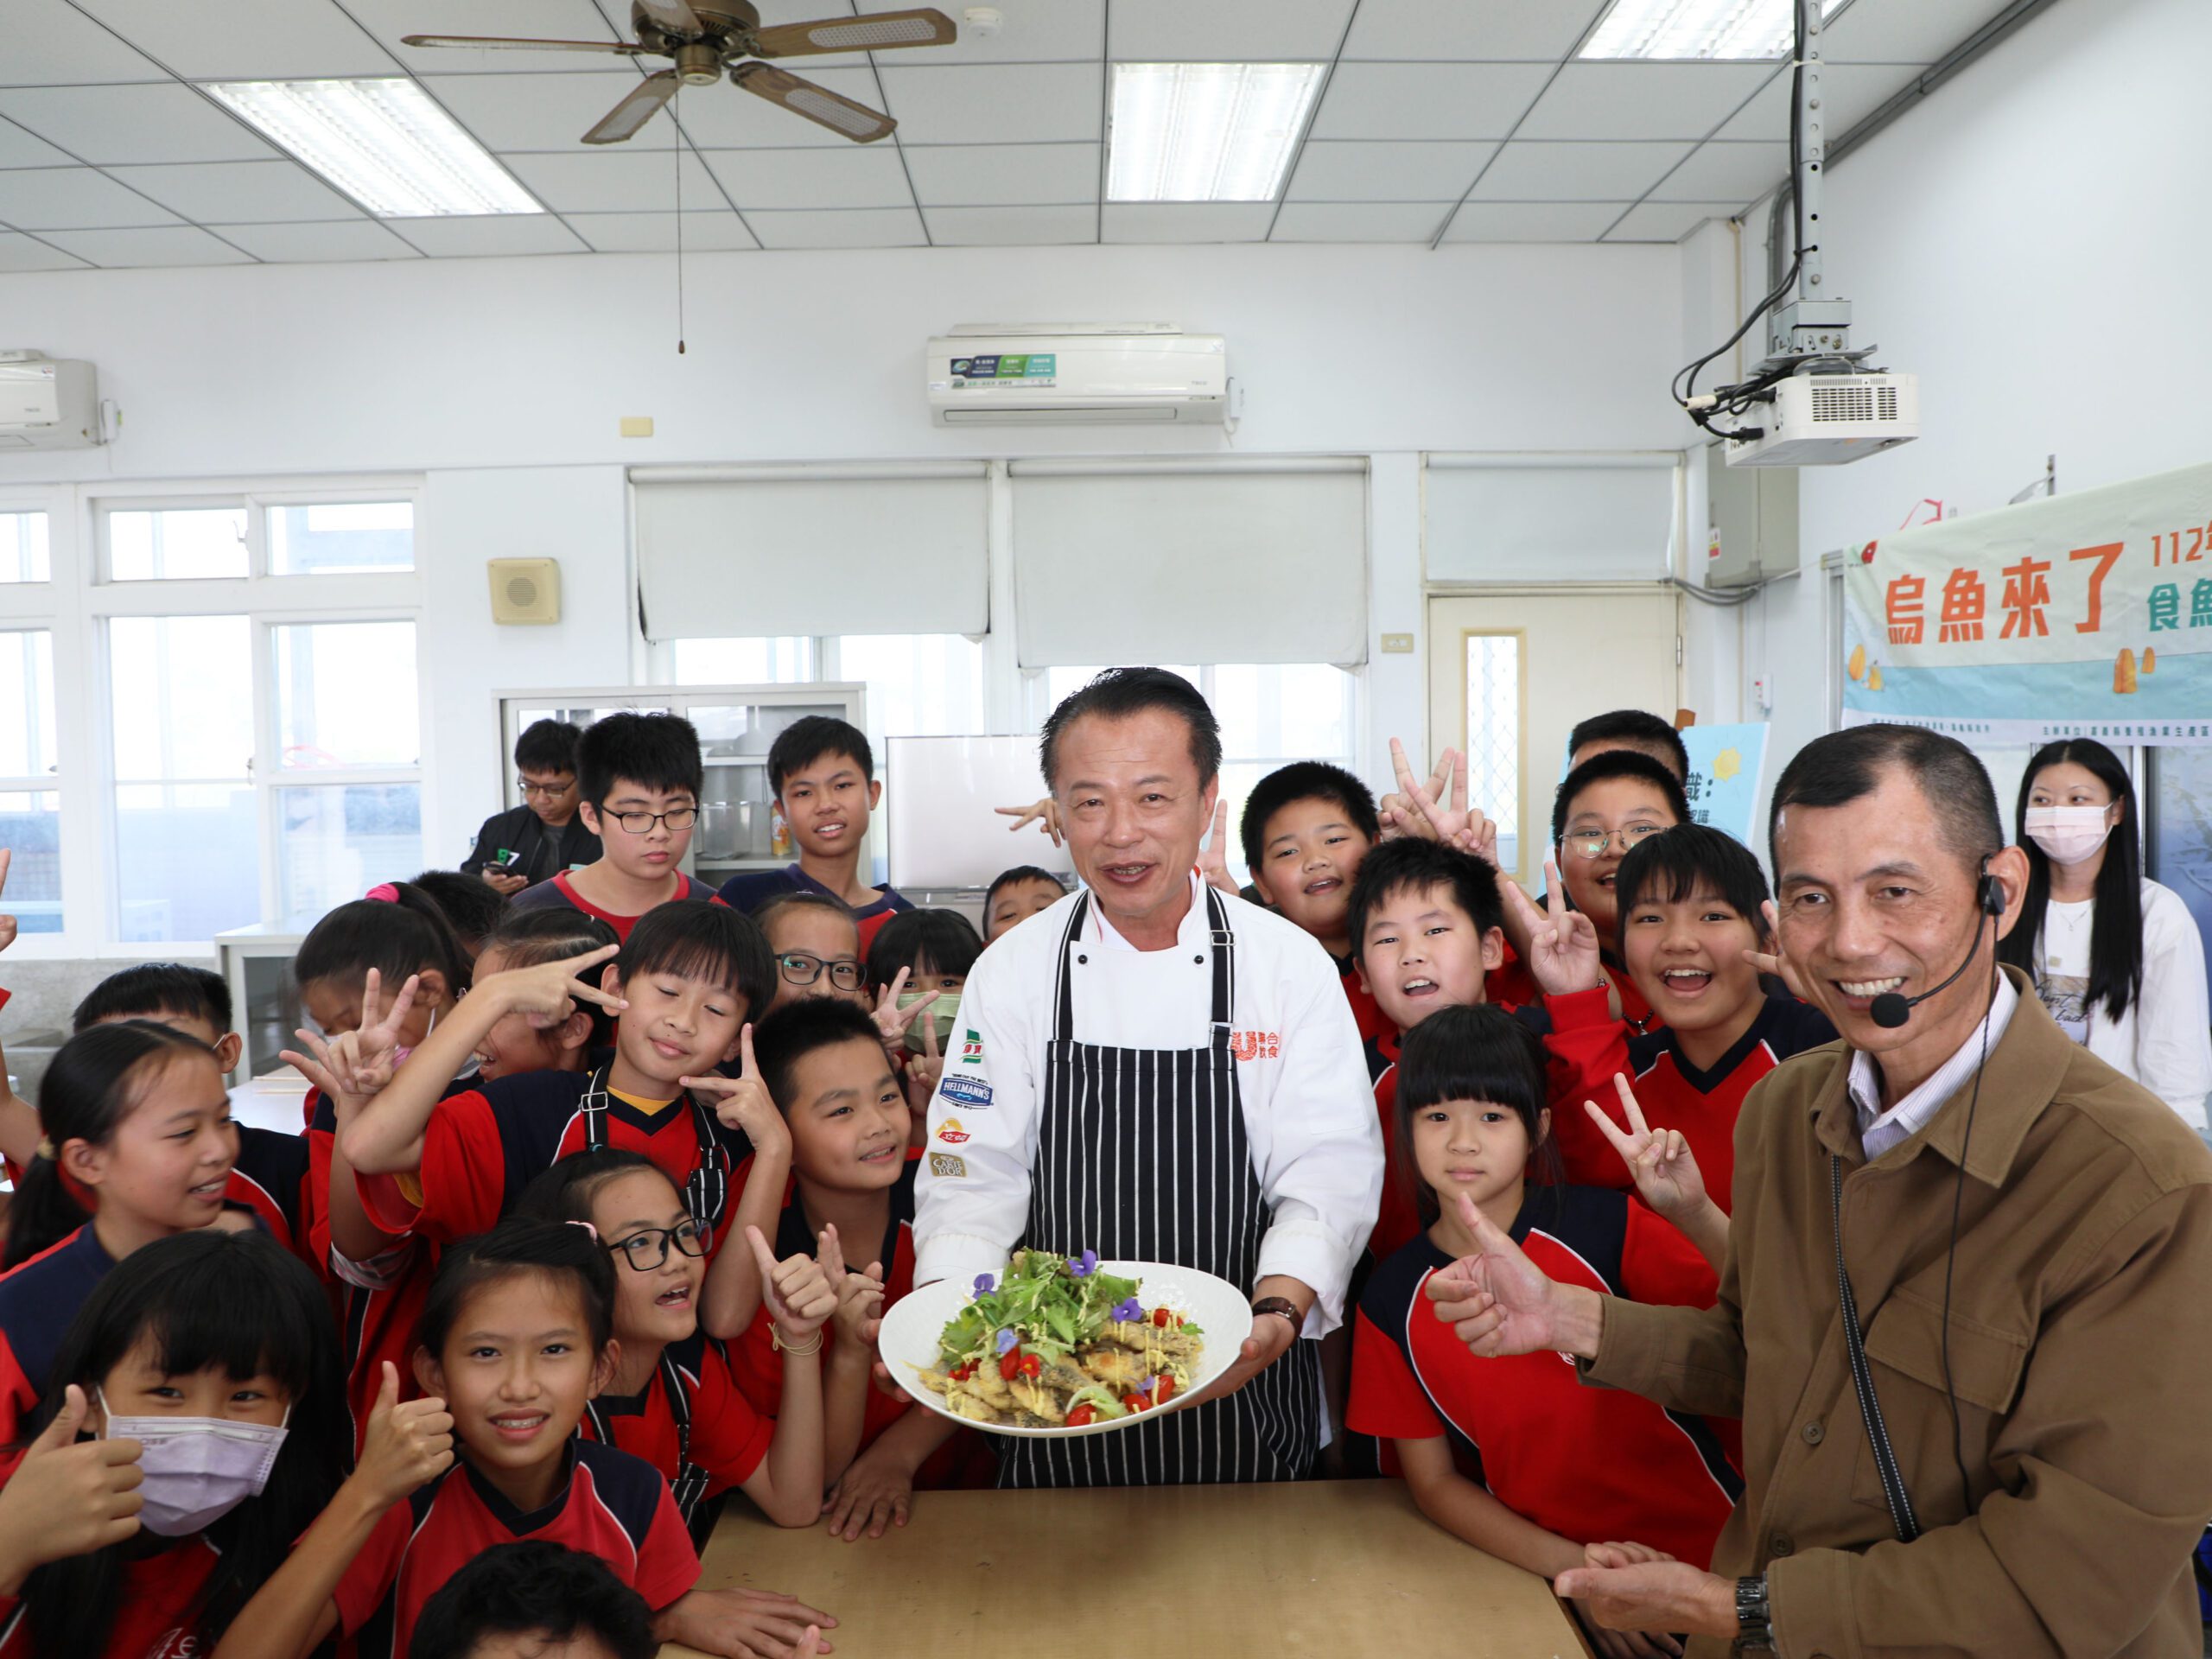 嘉義校園推廣食魚教育活動！ 翁章梁與學童體驗炸烏魚 - 早安台灣新聞 | Morning Taiwan News